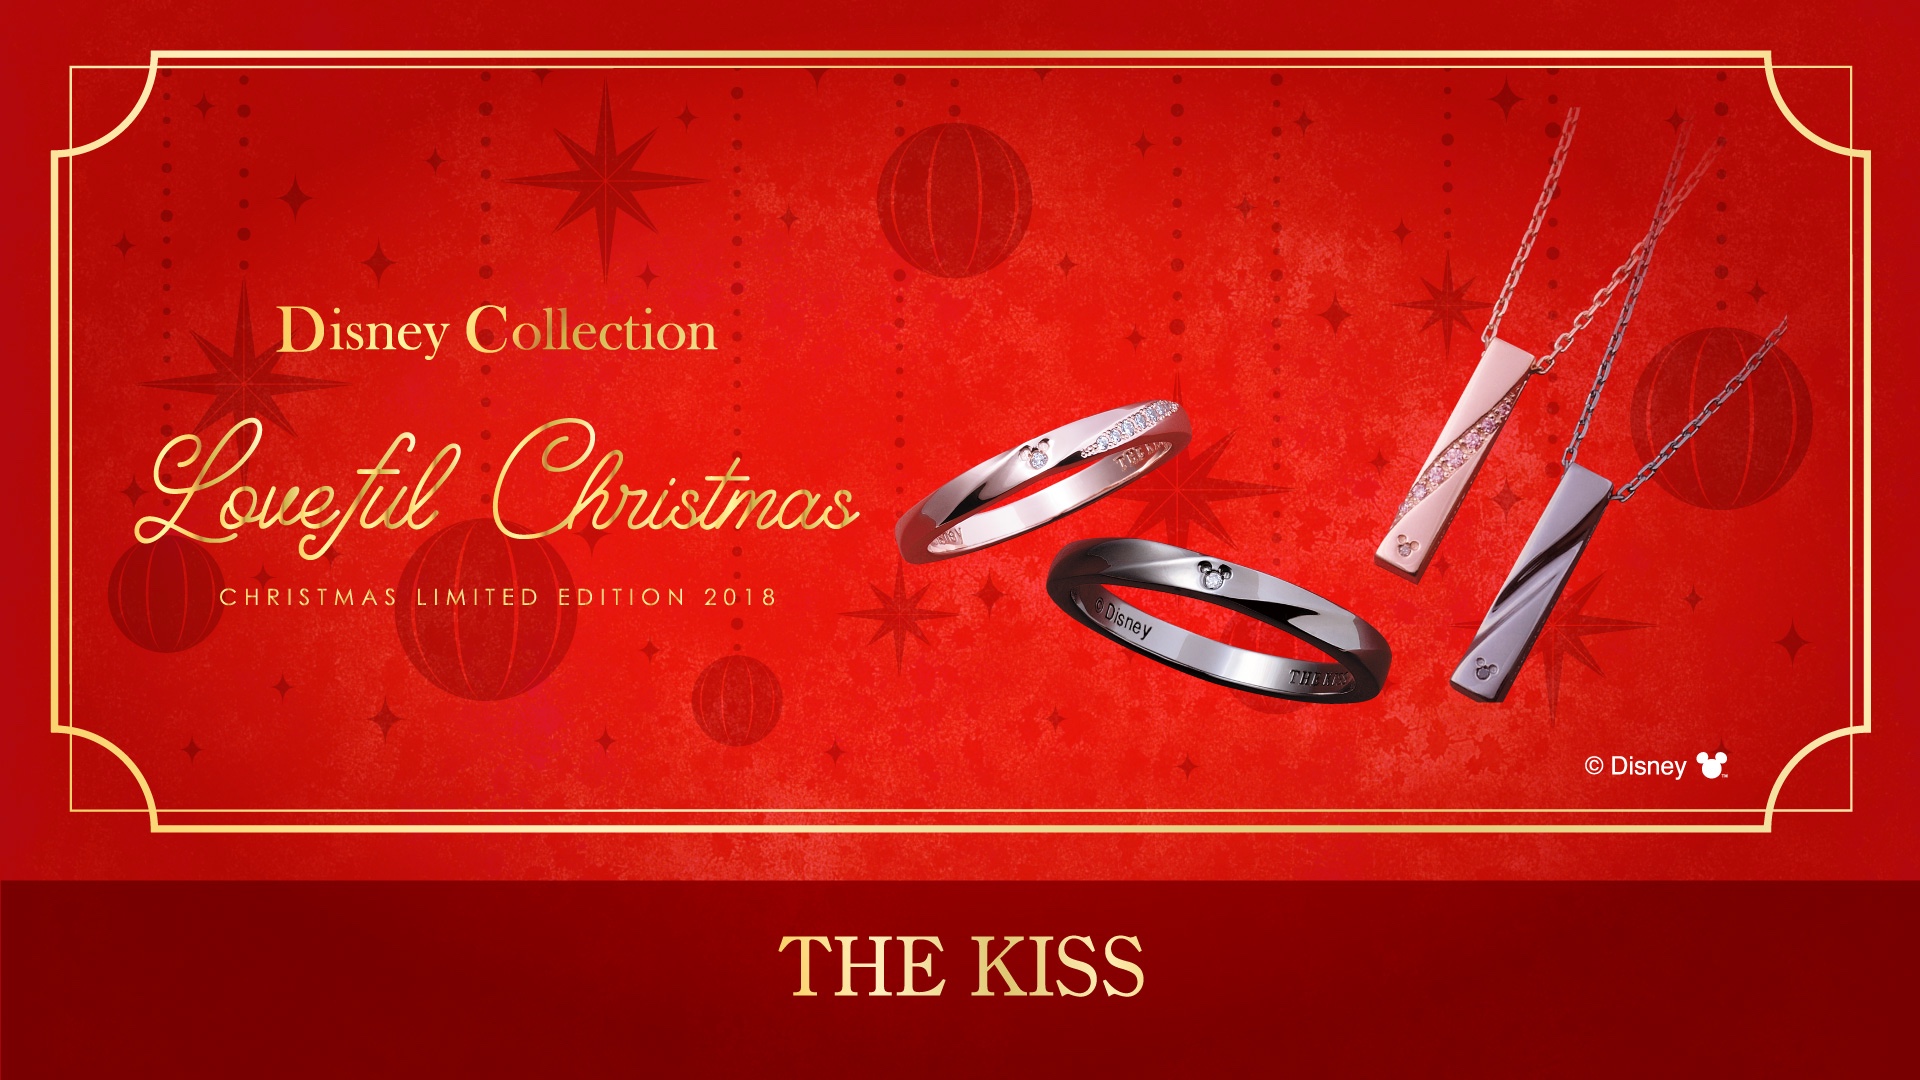 11 1 木 発売 18年 The Kiss ディズニーコレクション クリスマス限定商品 株式会社ザ キッスのプレスリリース